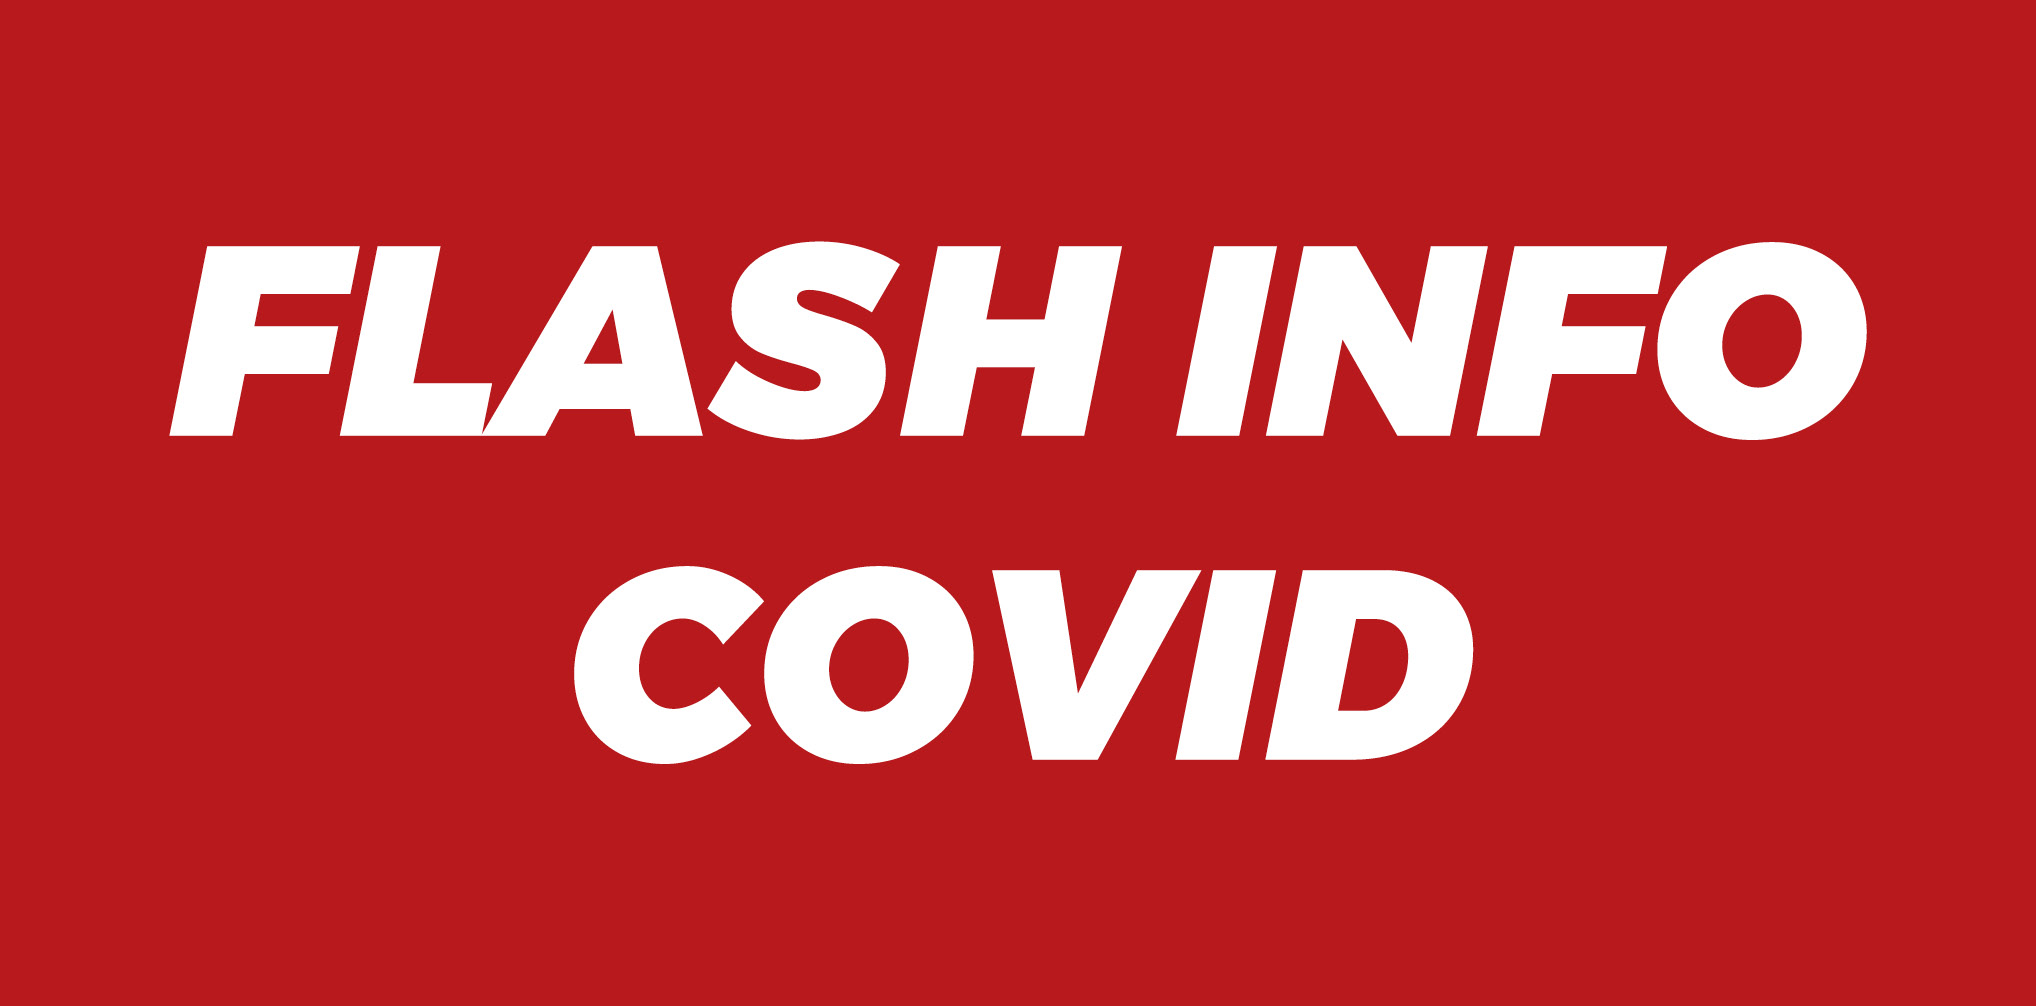 FLASH INFO COVID